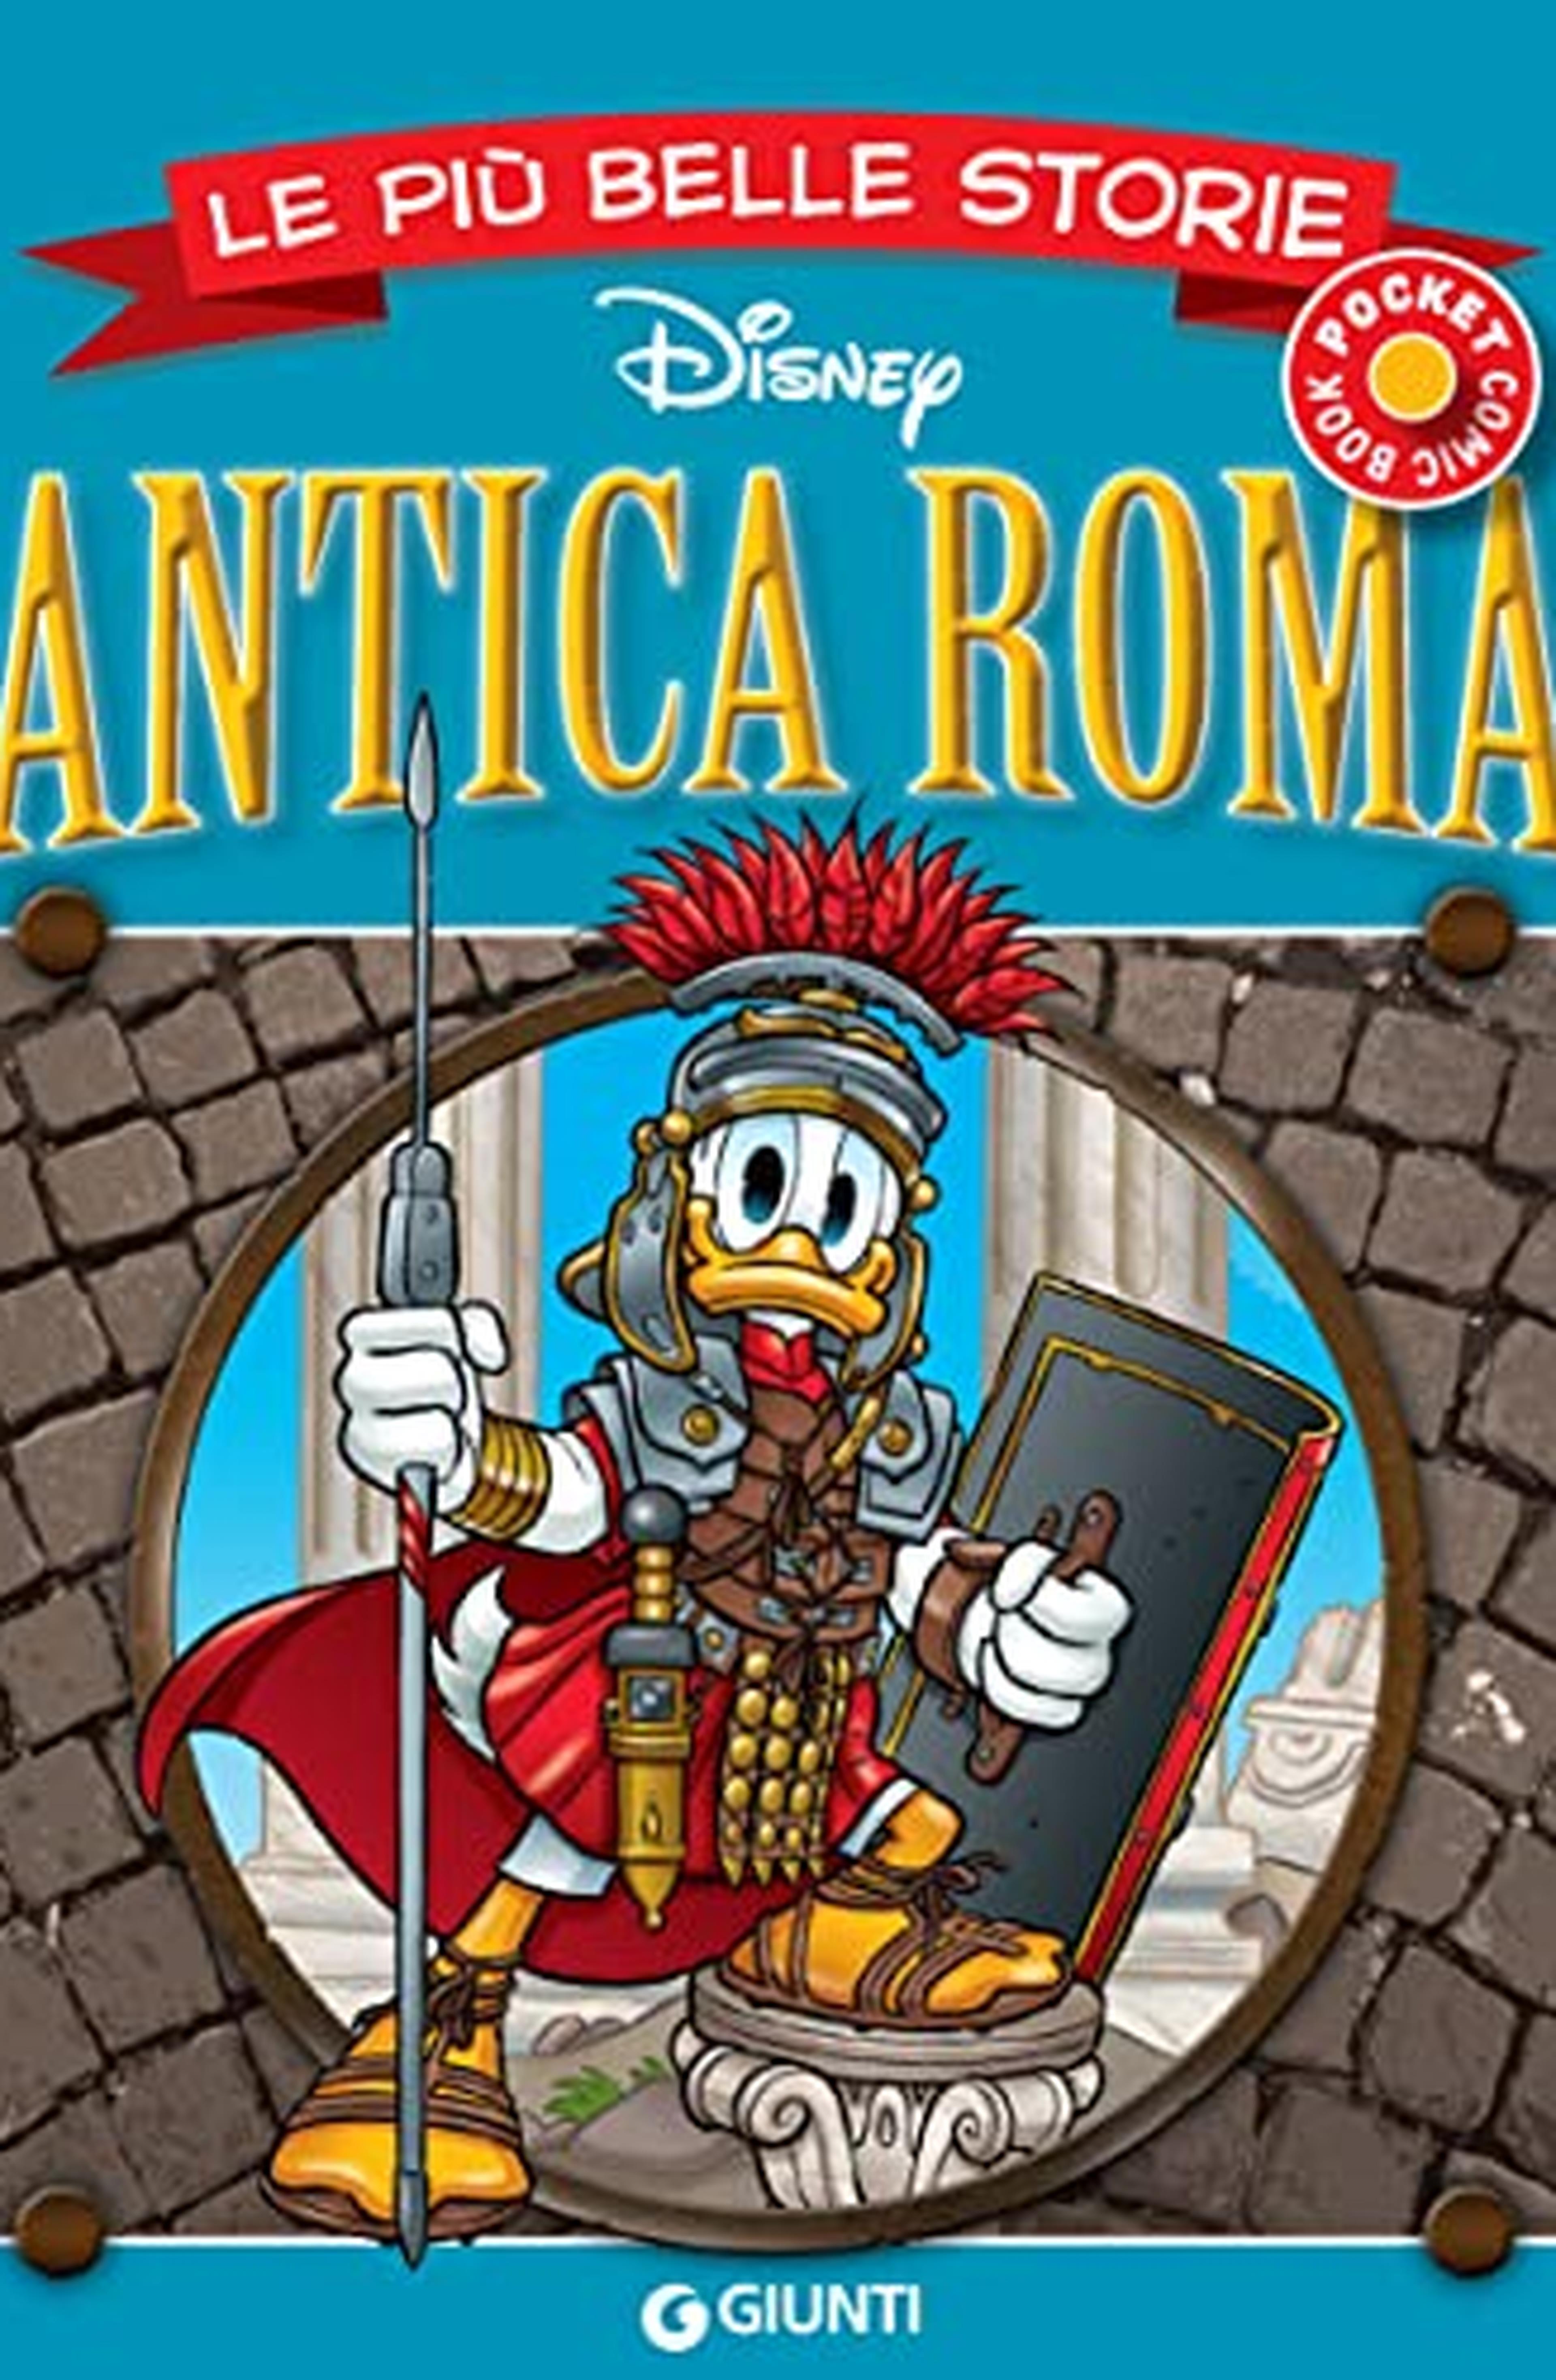 Le più belle storie sull'Antica Roma (Pocket Comic Book Vol. 18)